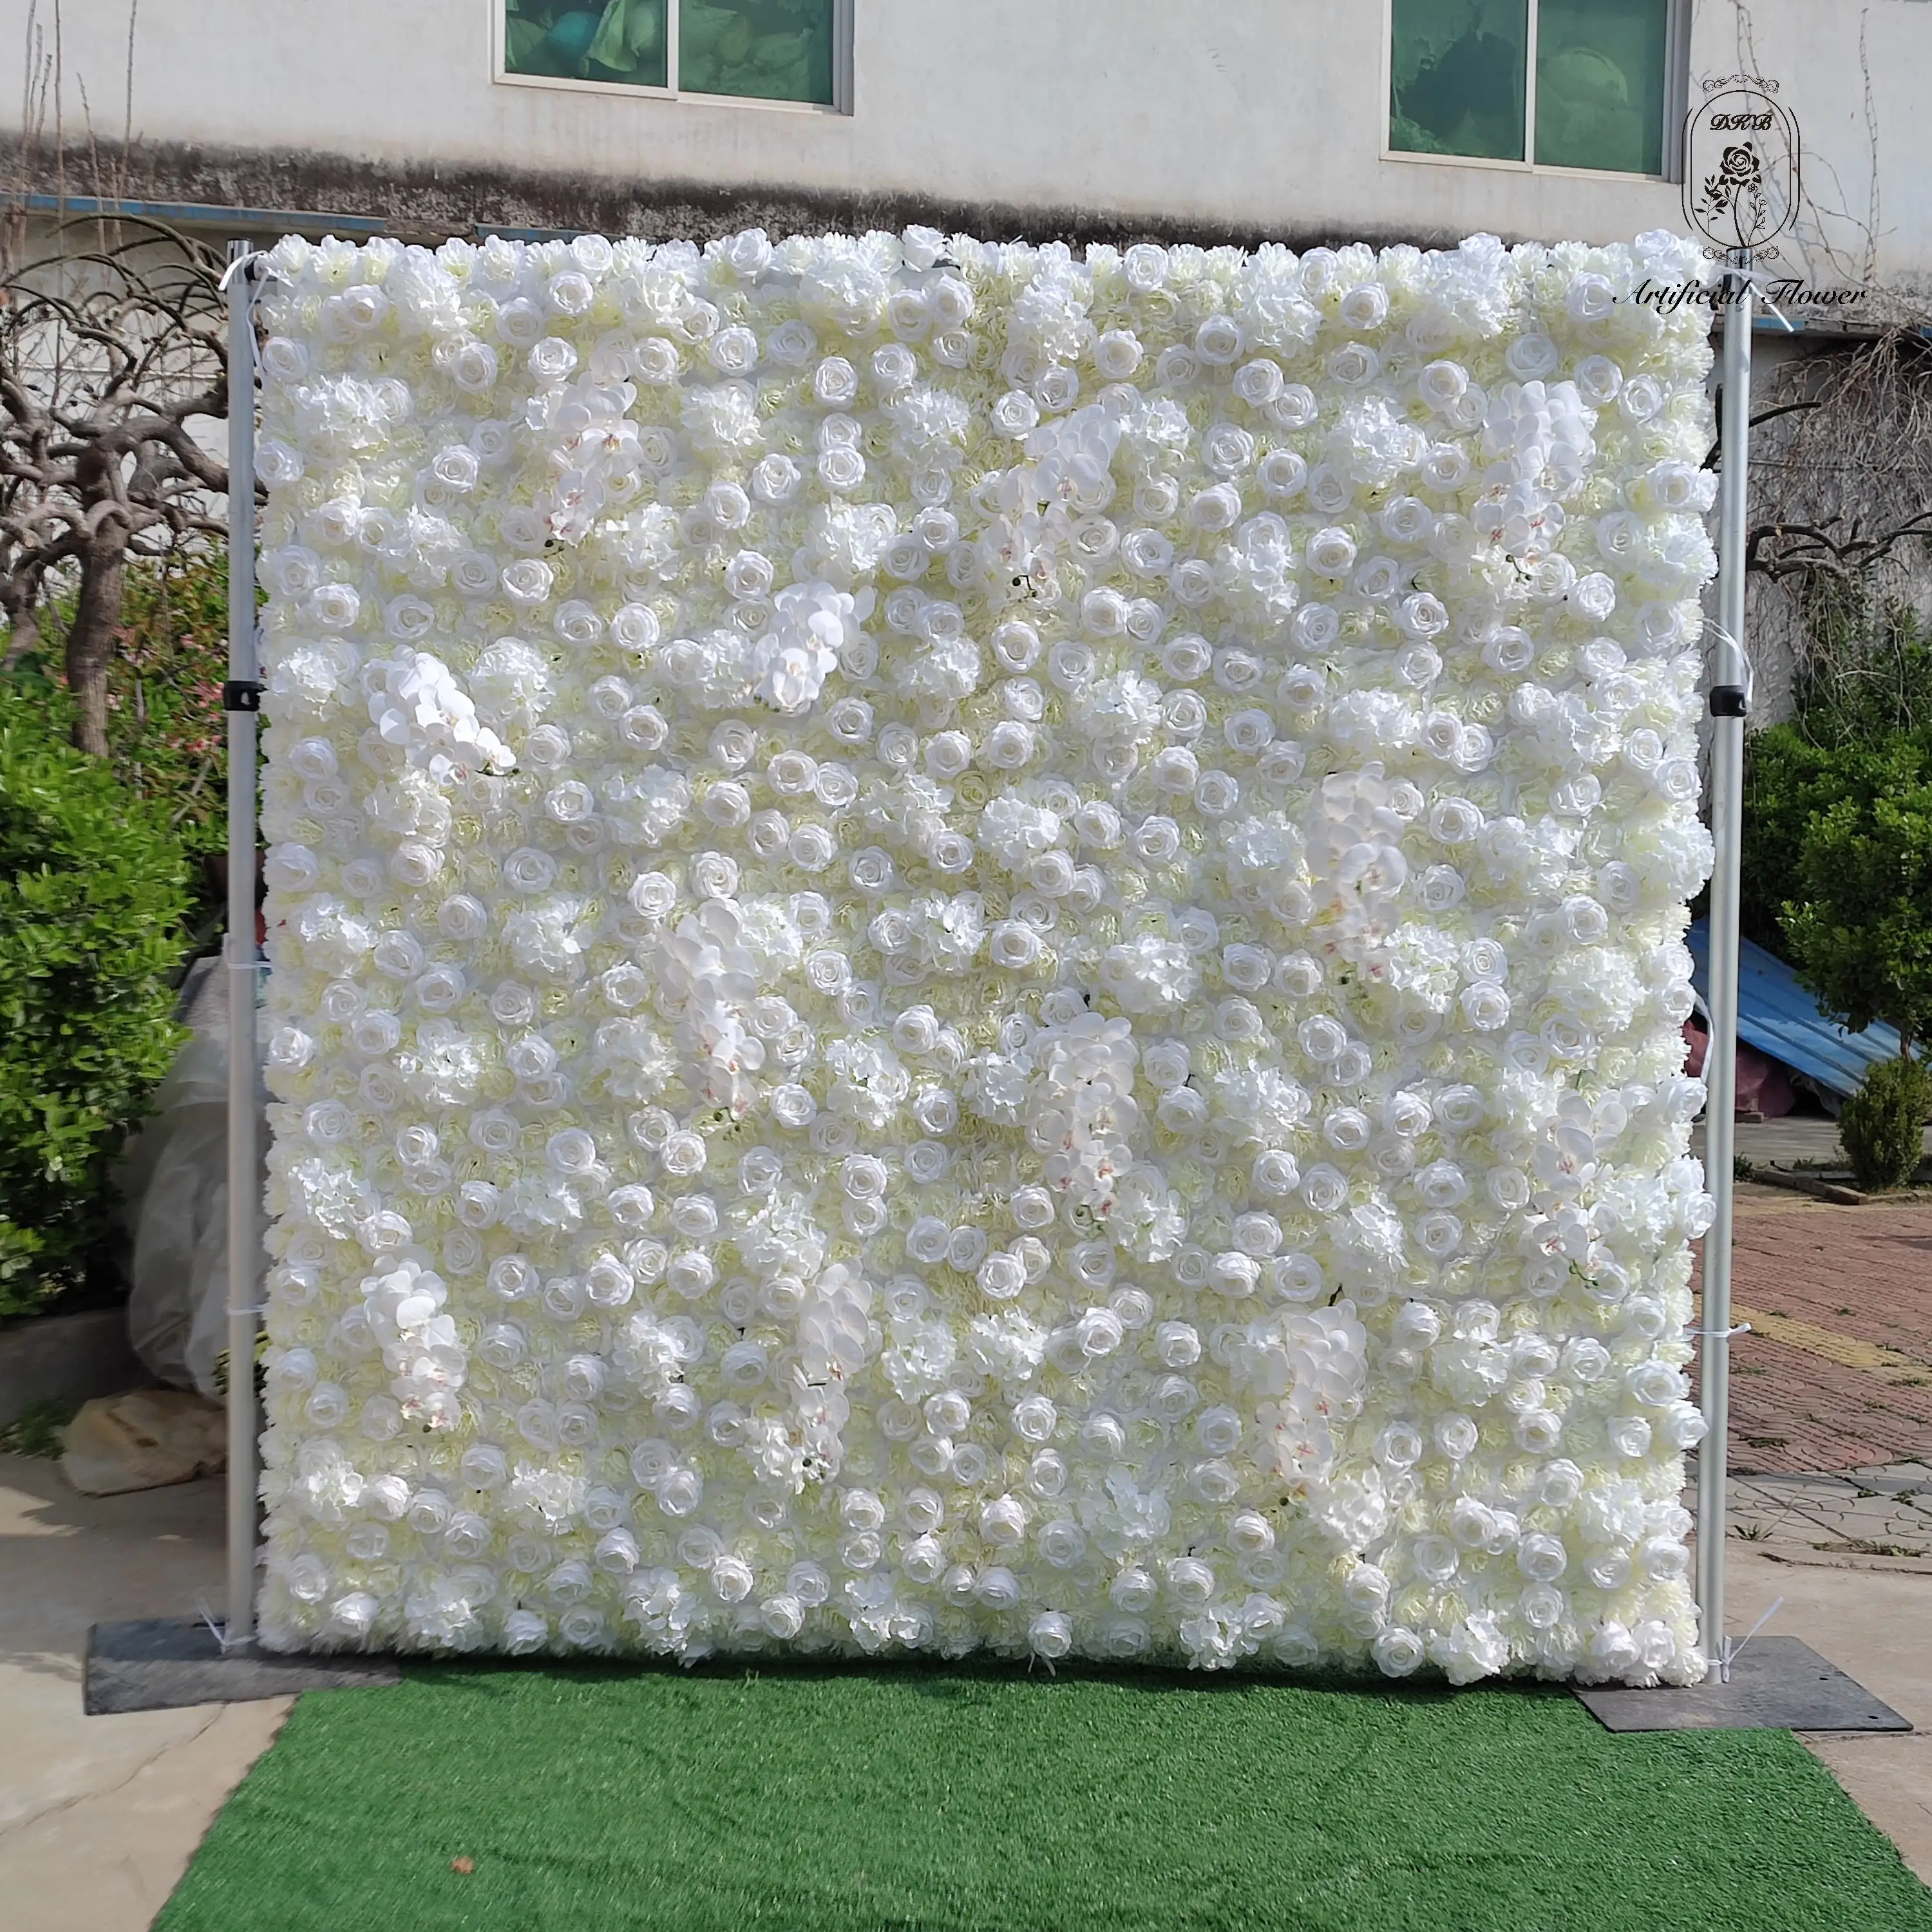 DKB HQ031 personnalisé 3D tissu fleur mur mariage soie artificielle Rose fleur panneau mural toile de fond décoratif fleur artificielle mur